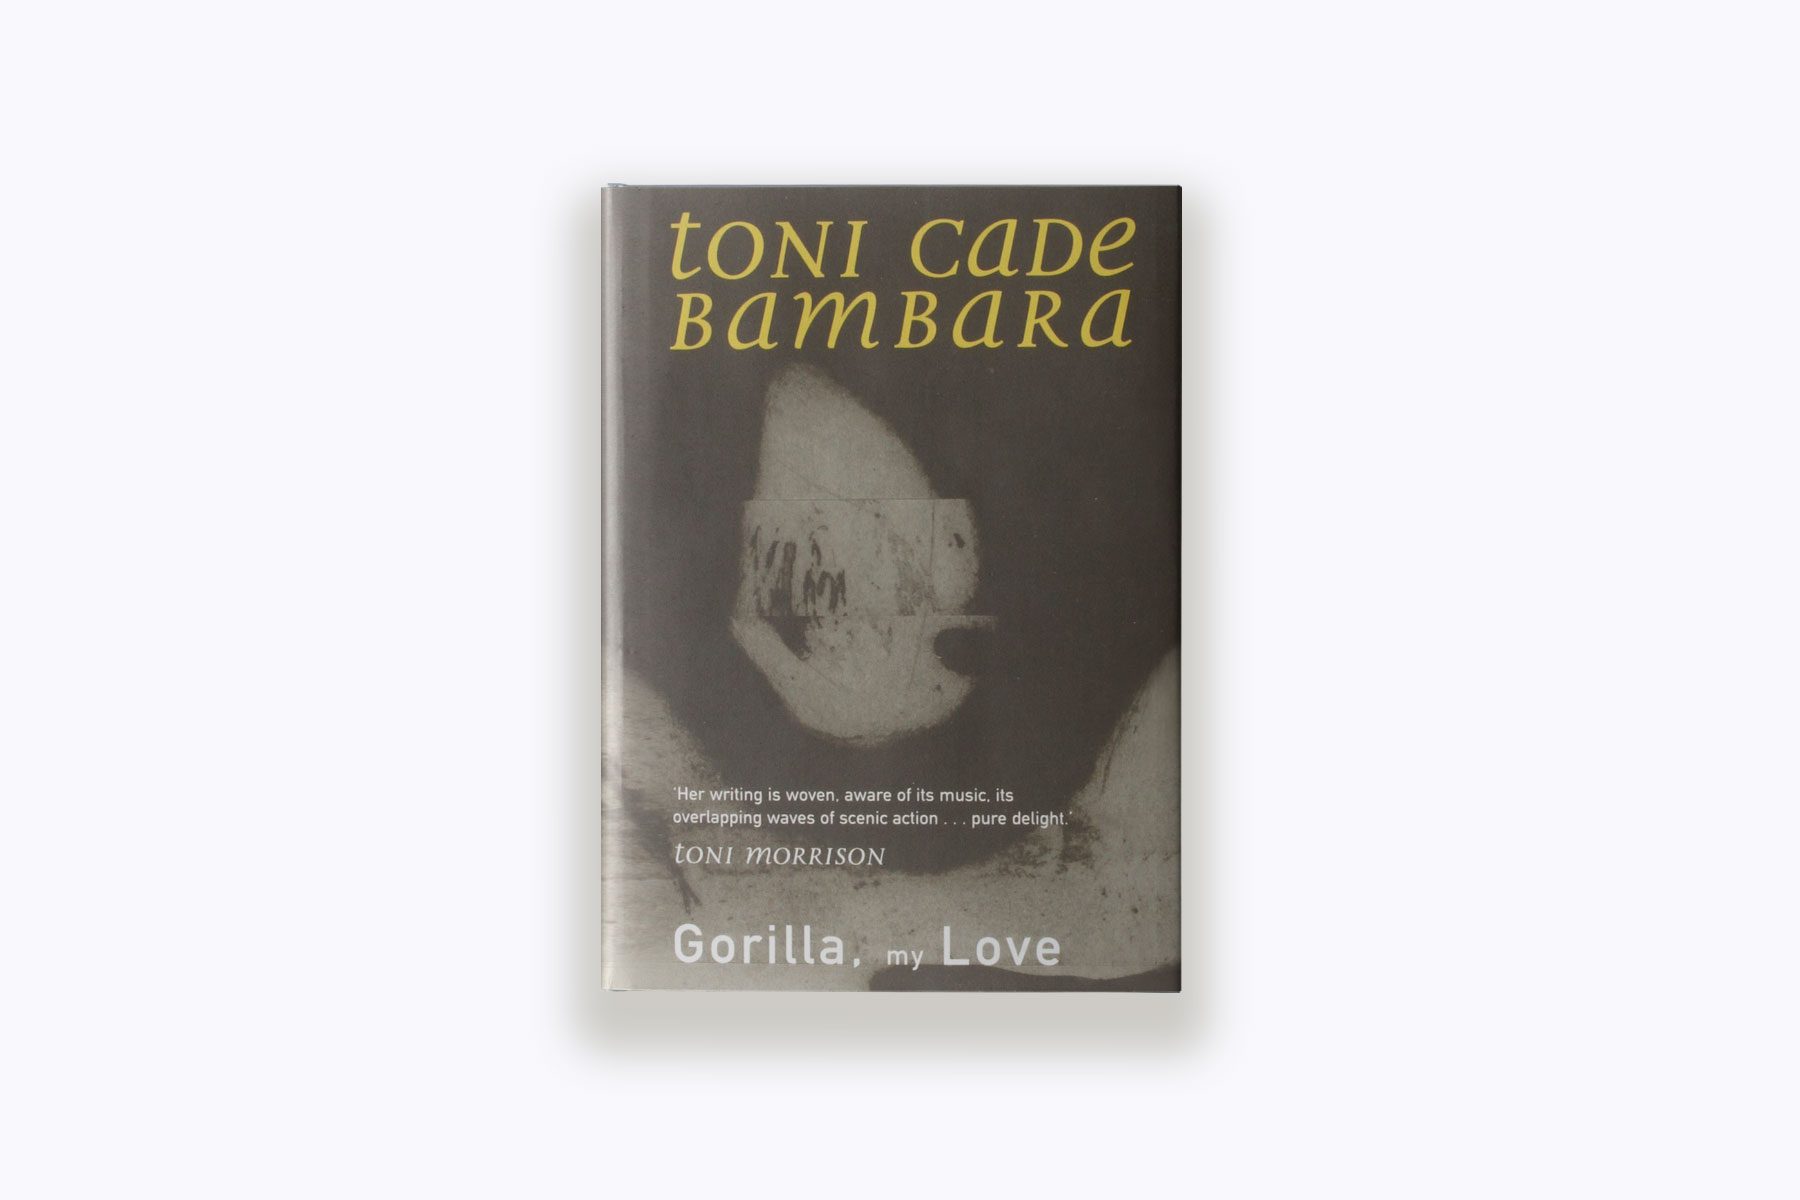 Toni Cade Bambara's "Gorilla, My Love"